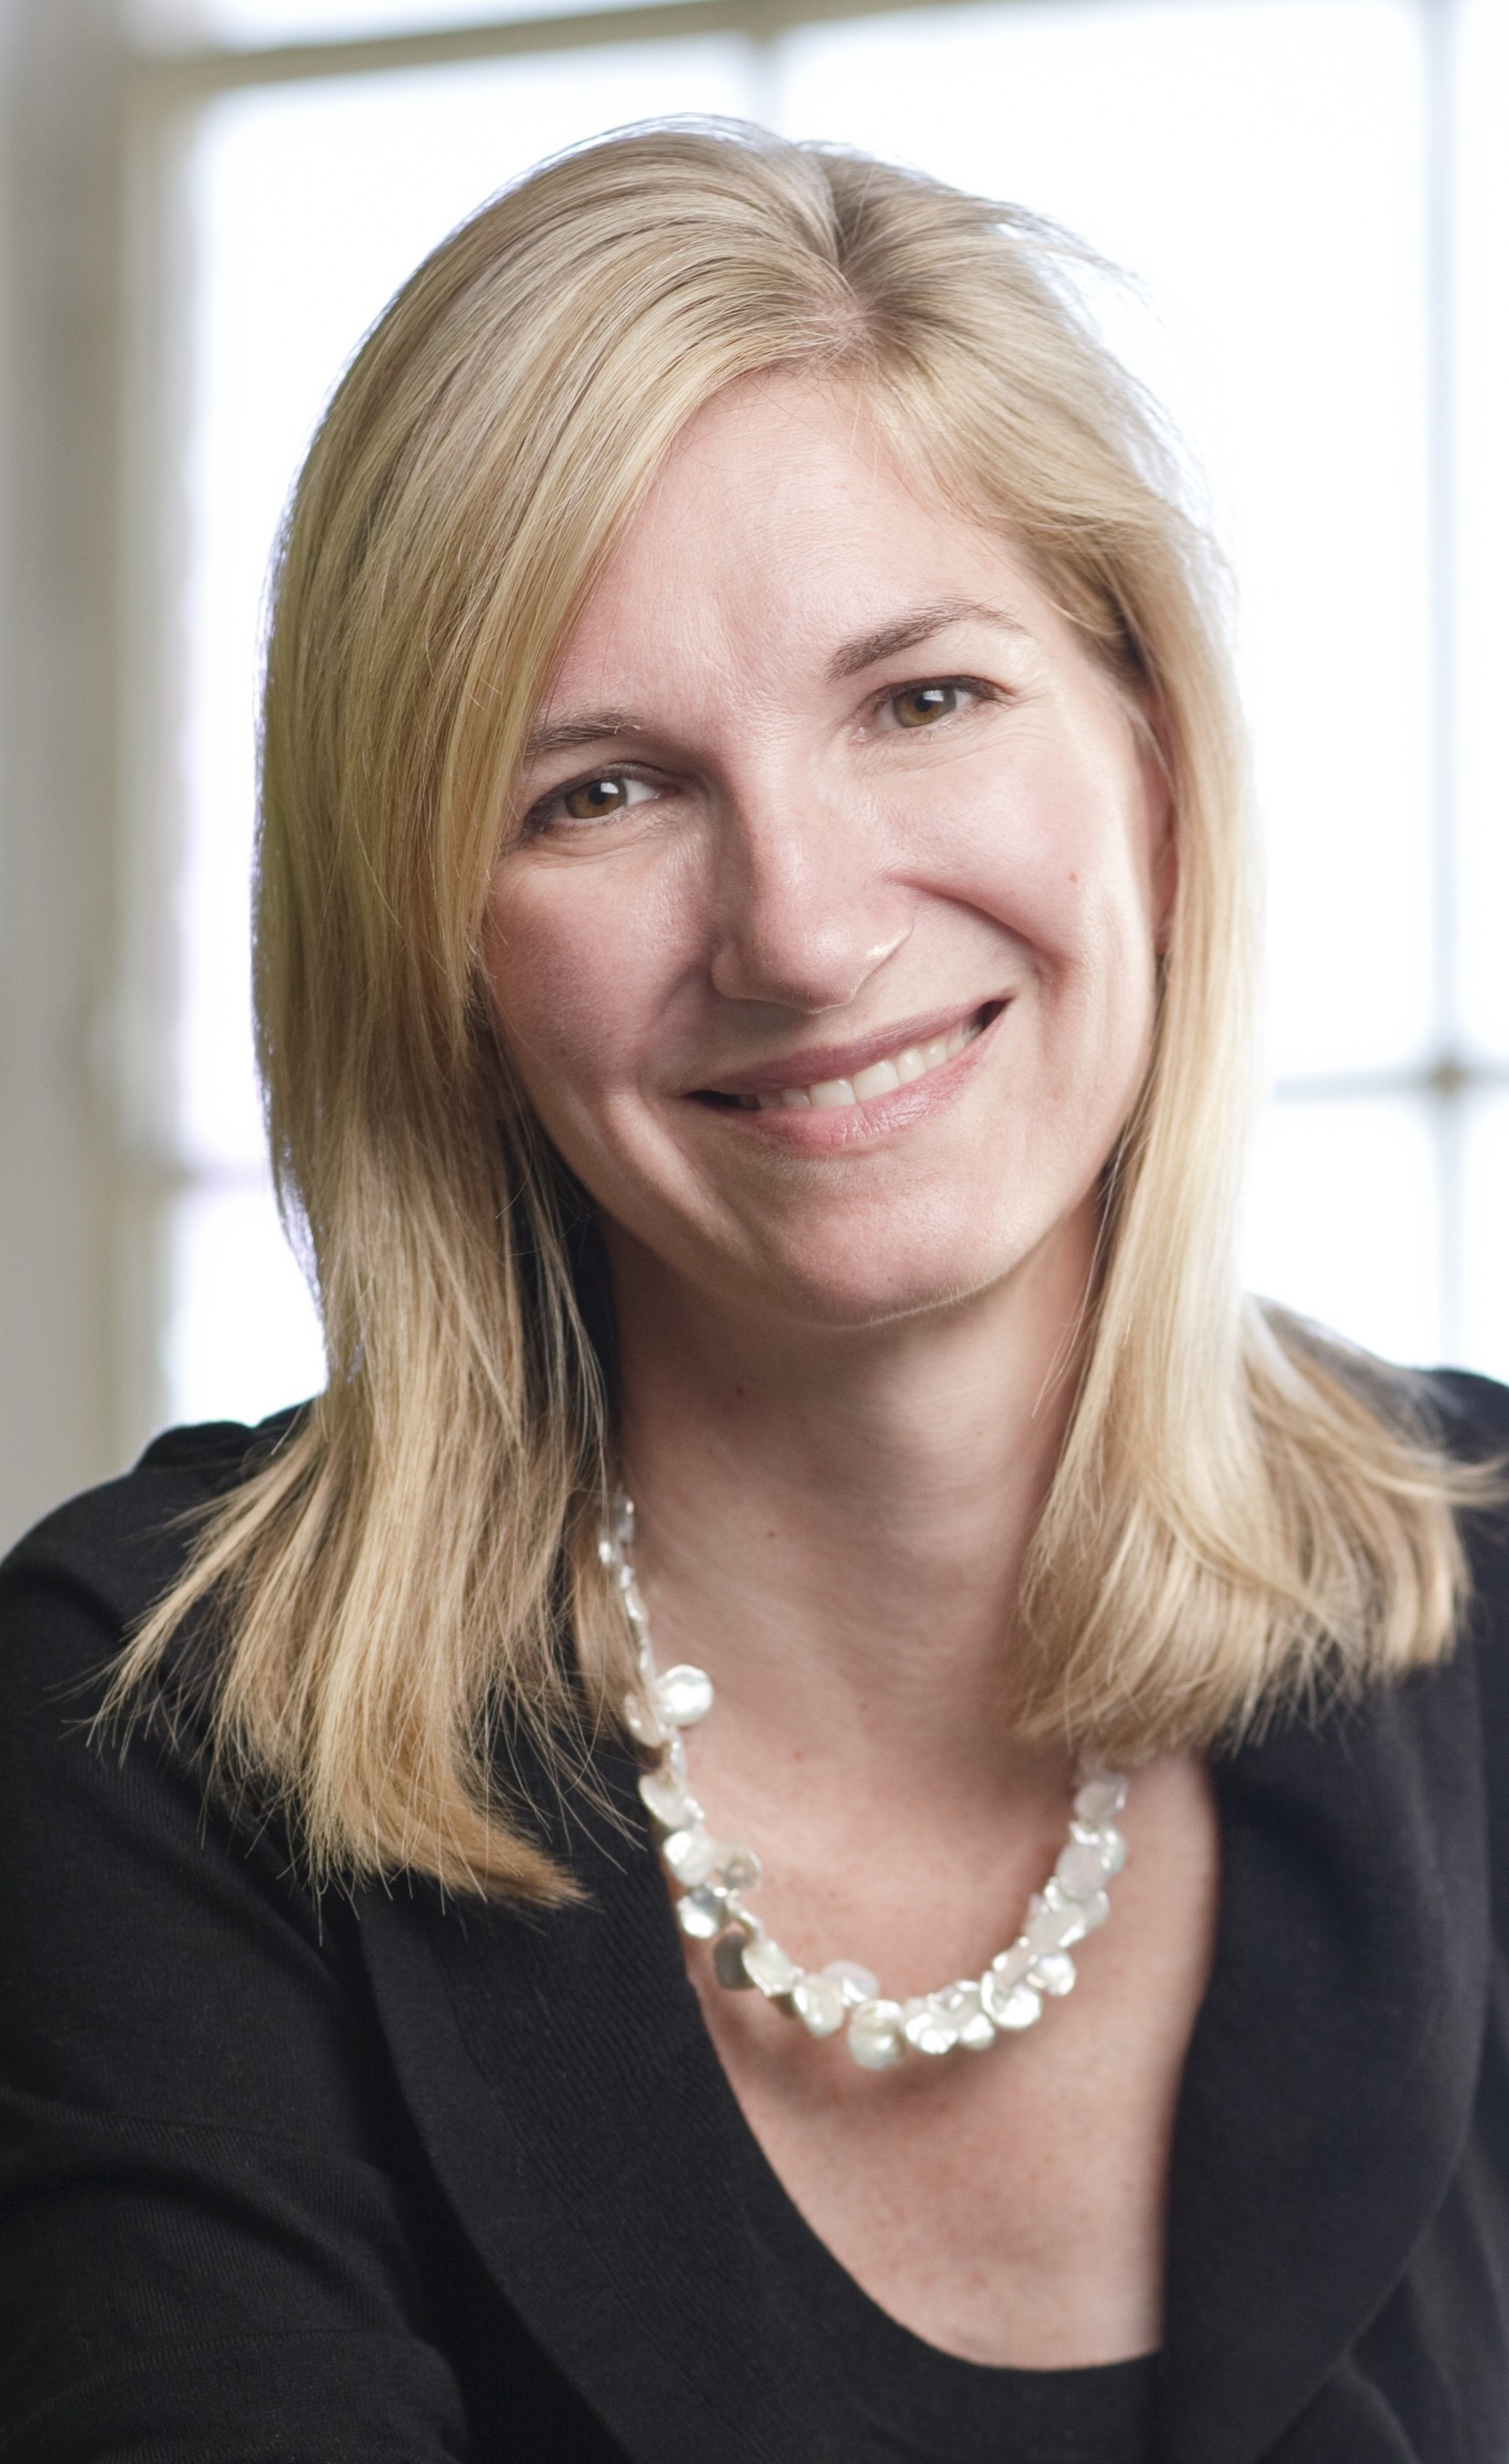 Julie Herendeen - Joins HubSpot Board of Directors